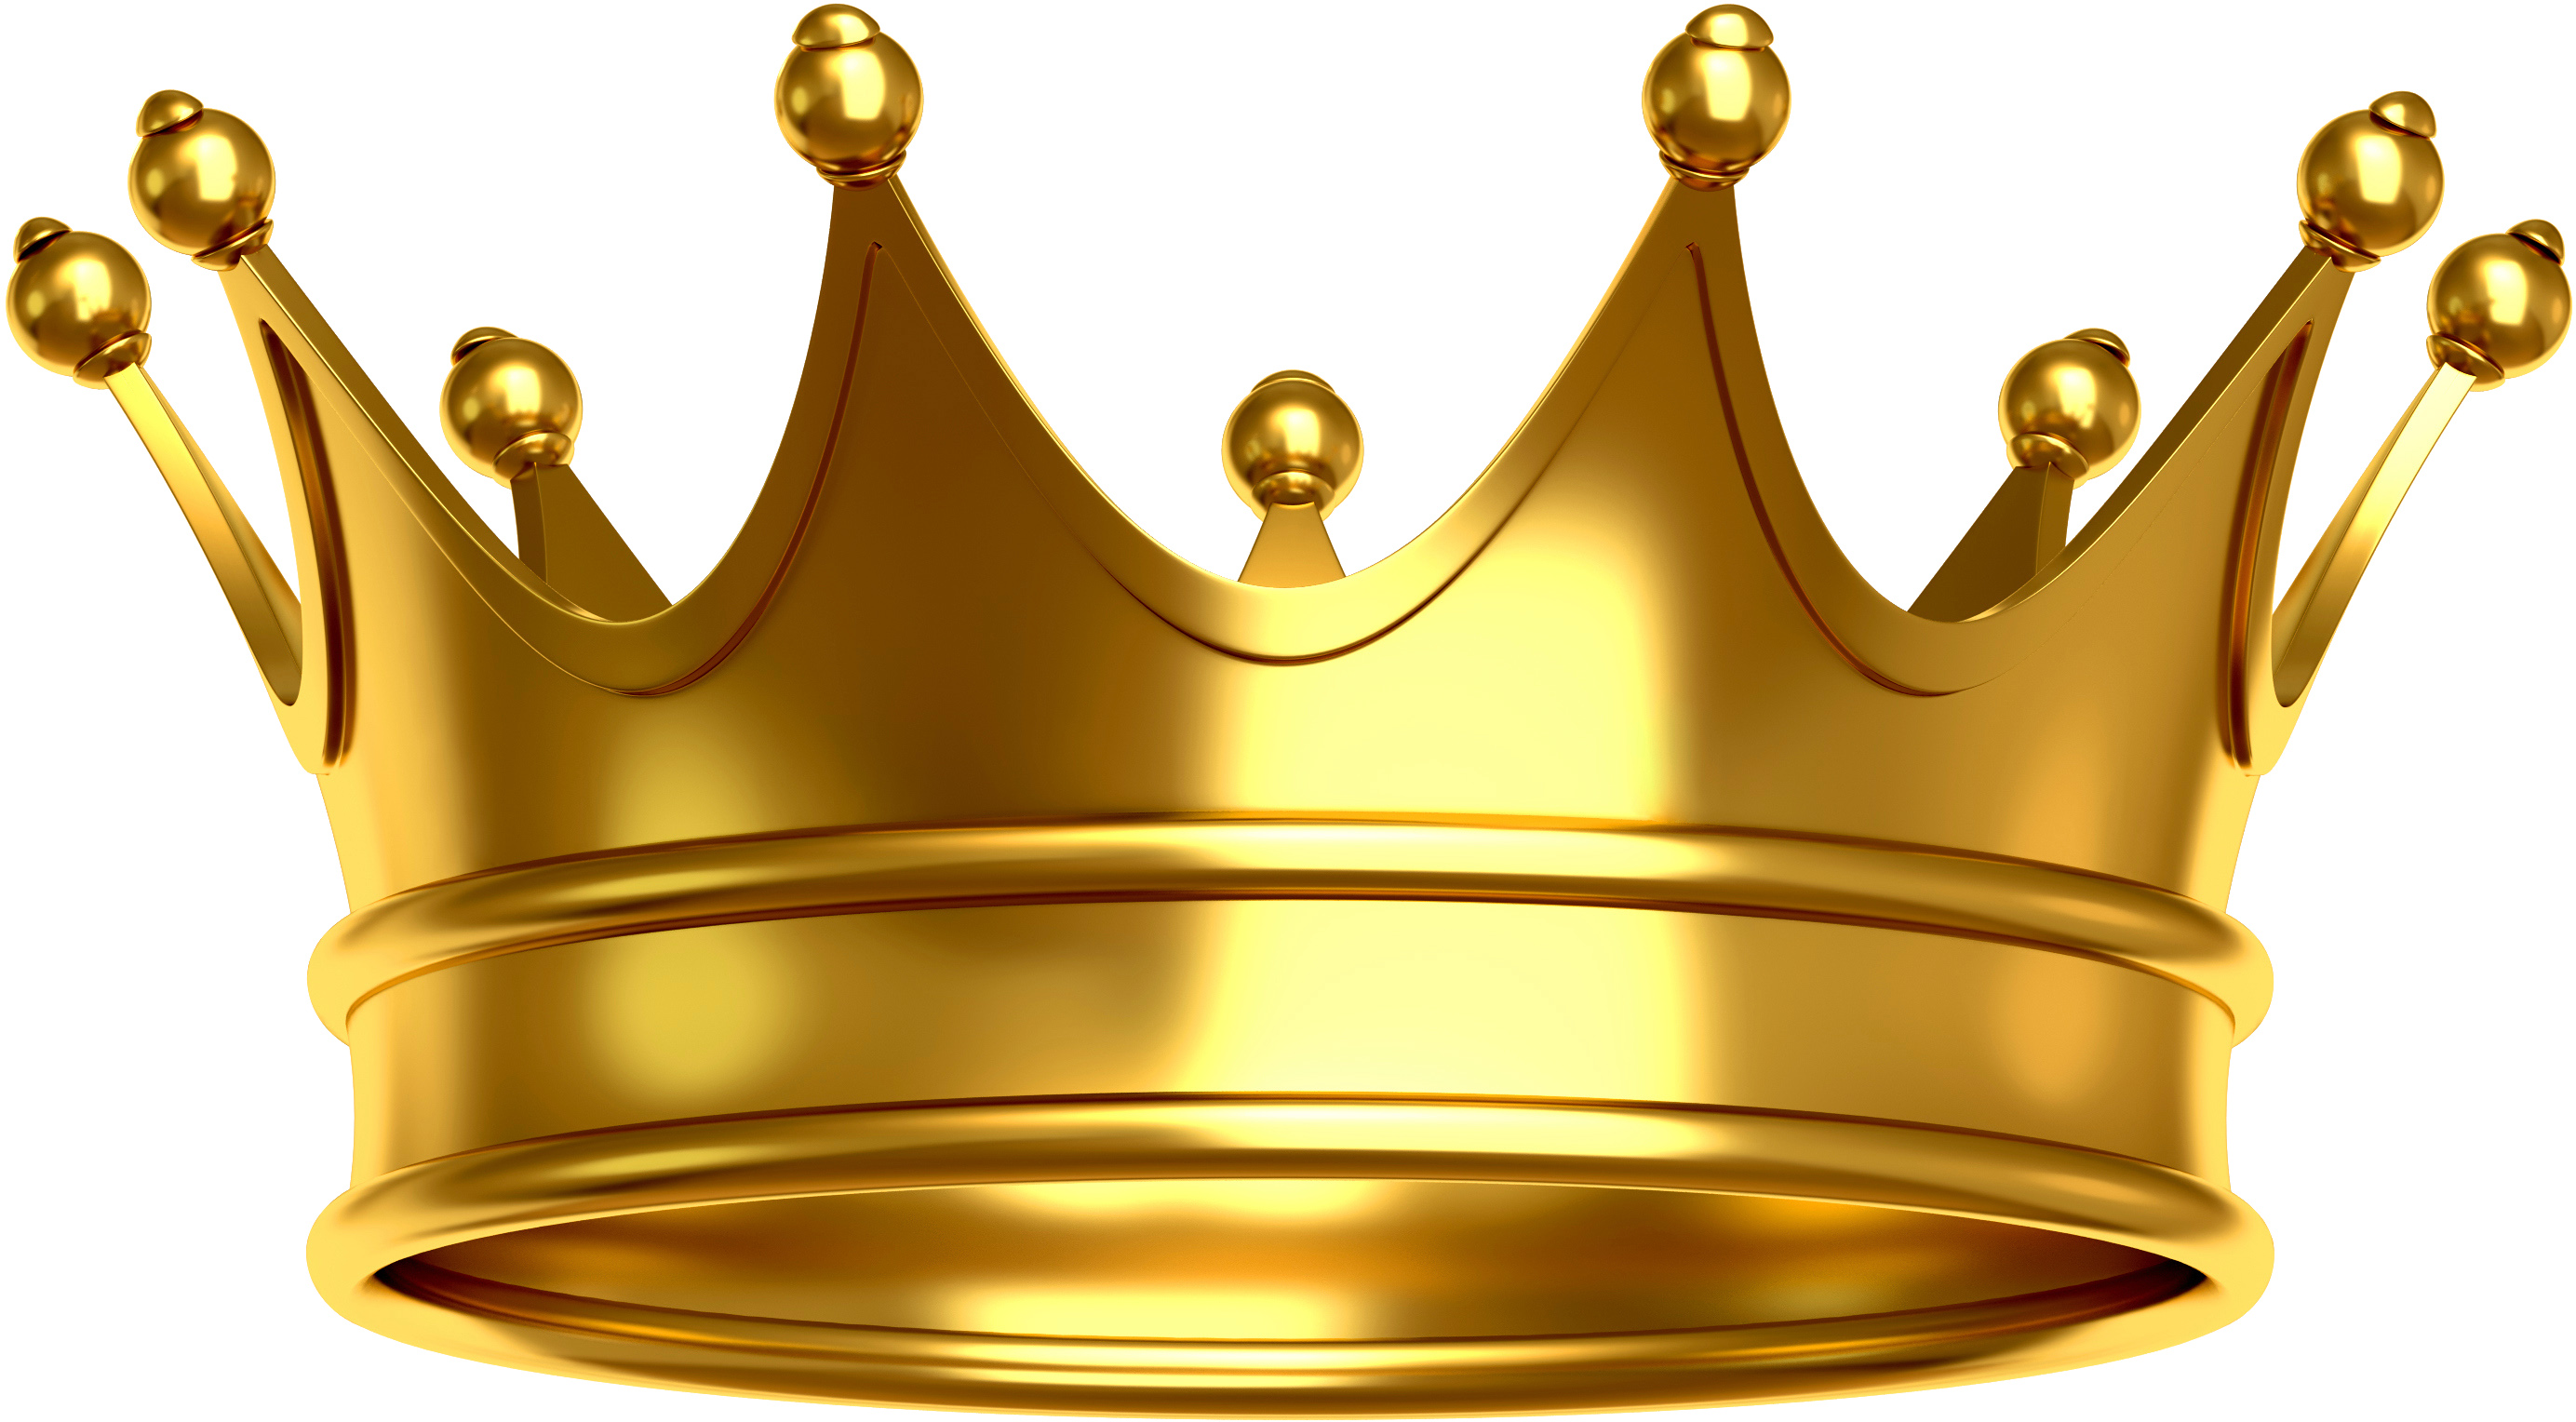 A Golden Crown